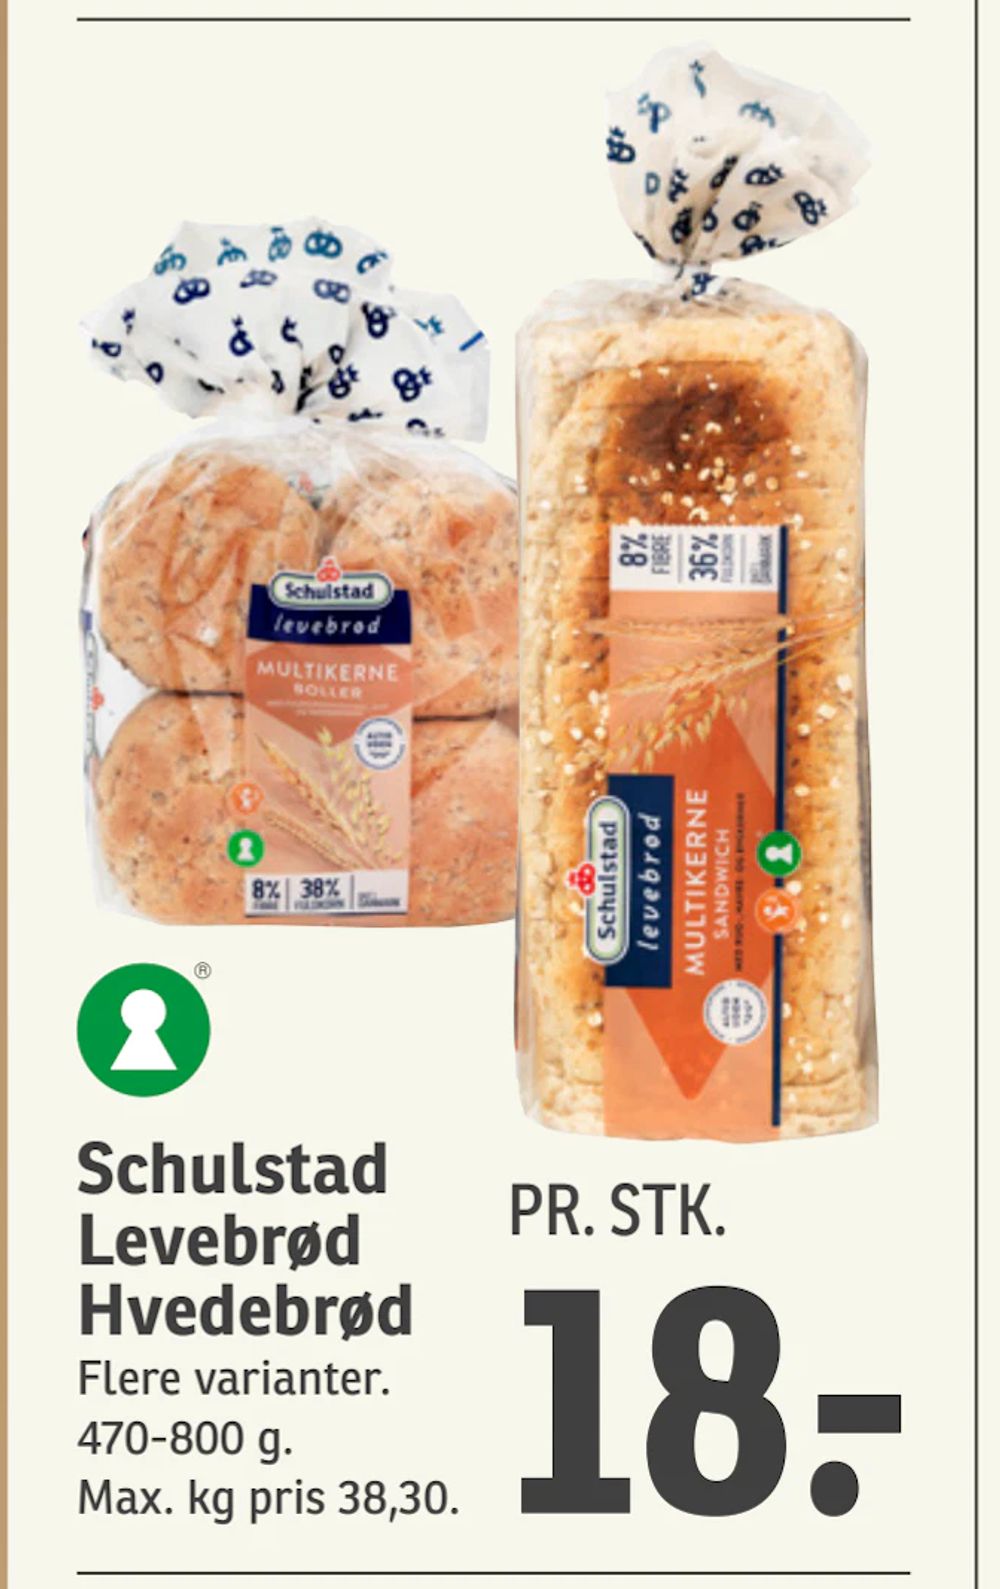 Tilbud på Schulstad Levebrød Hvedebrød fra SPAR til 18 kr.